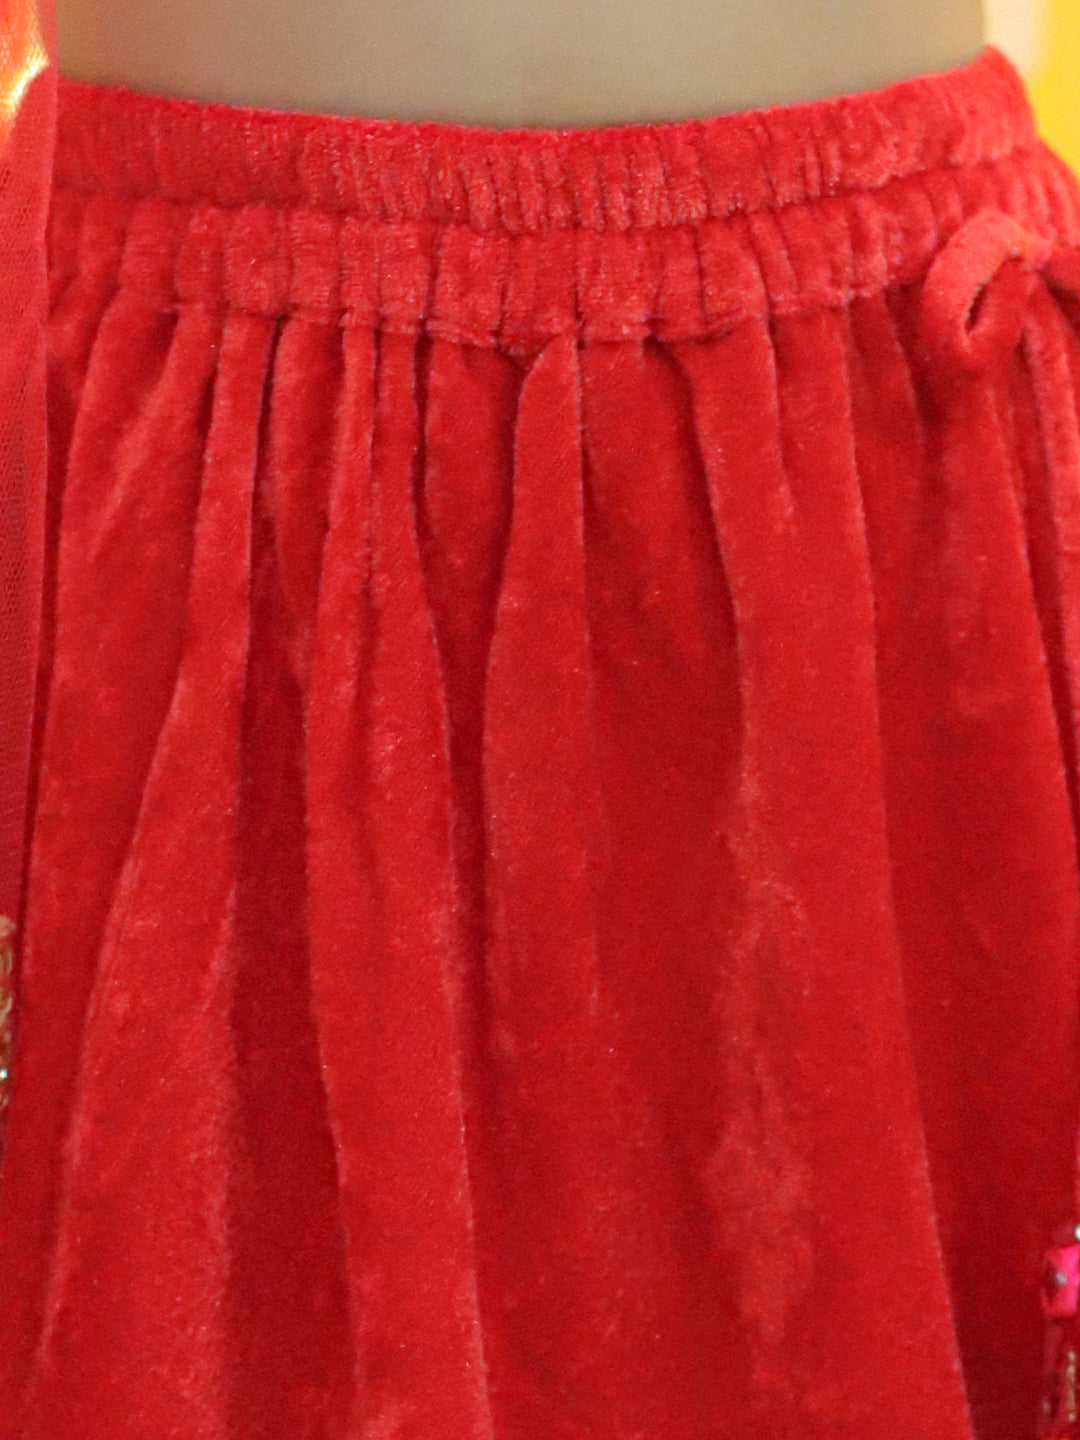 BownBee Embroidered Velvet Full Sleeve Top with Lehenga & Dupatta for Girls- Red